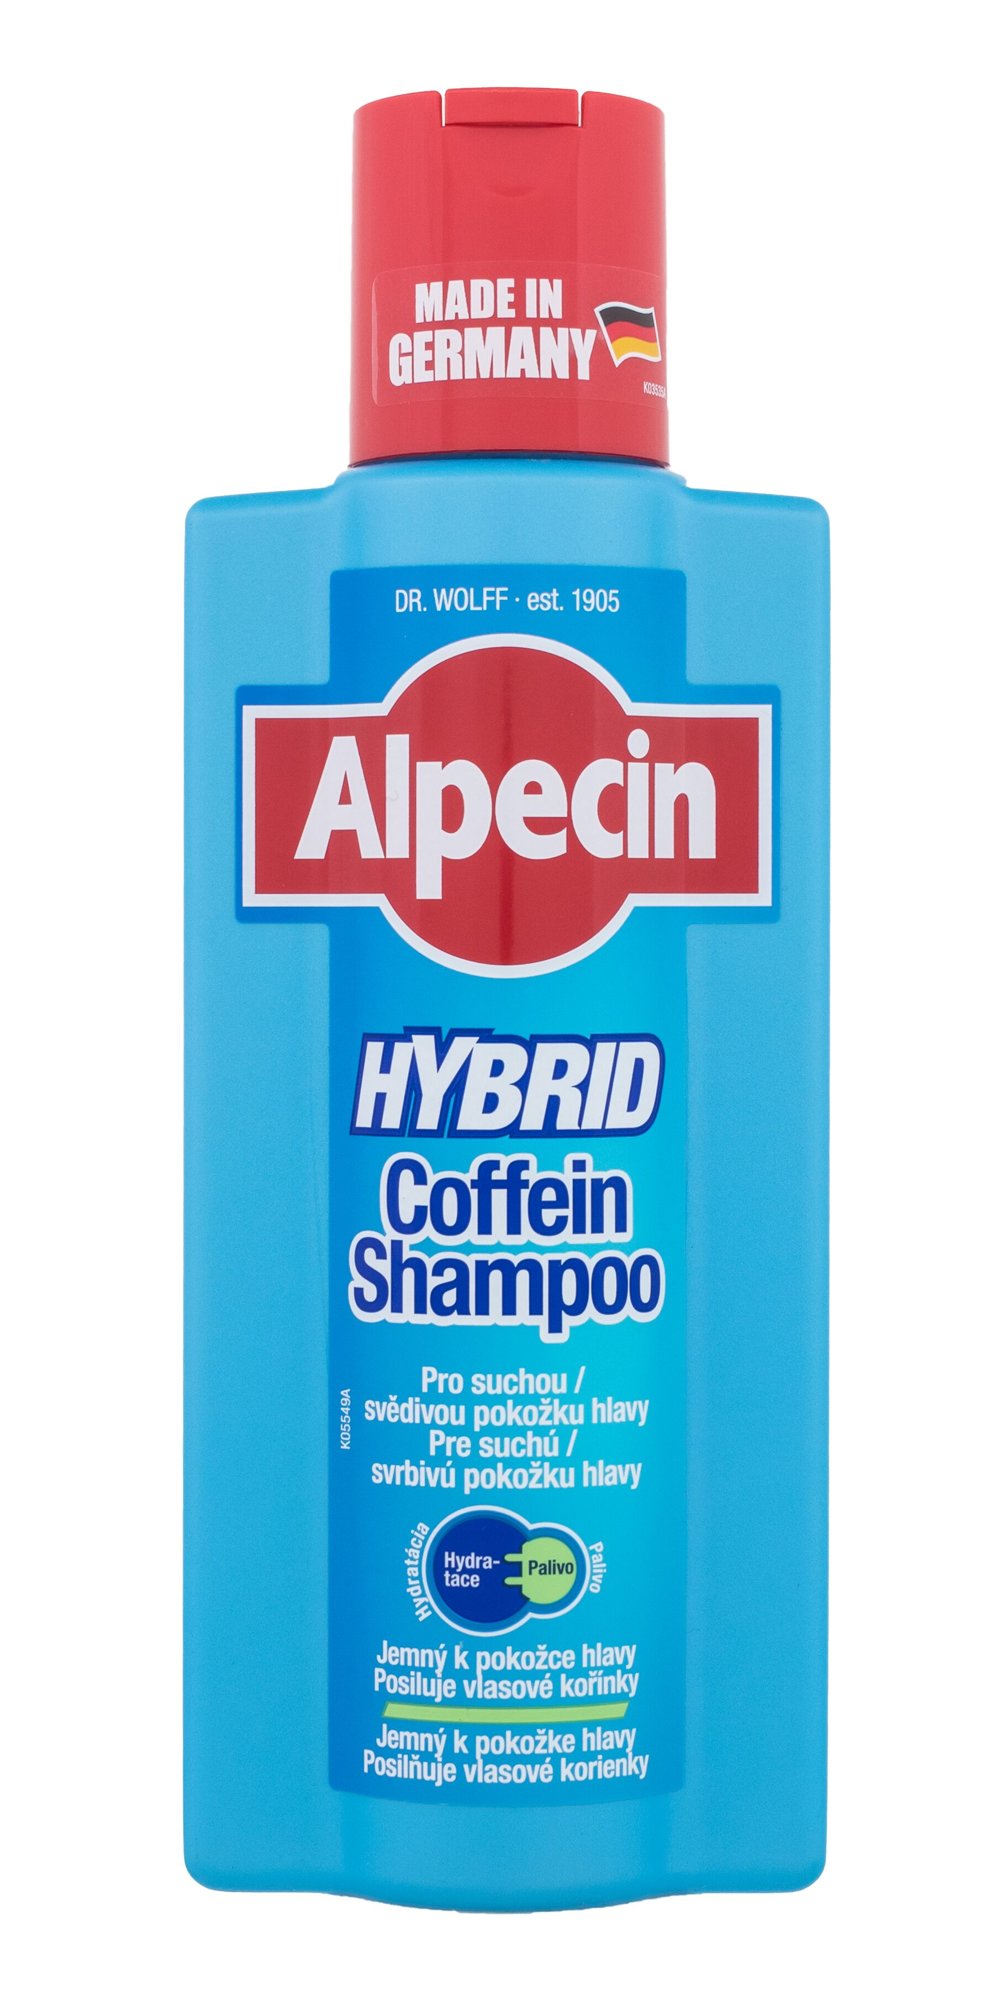 Alpecin Hybrid Coffein Shampoo šampūnas